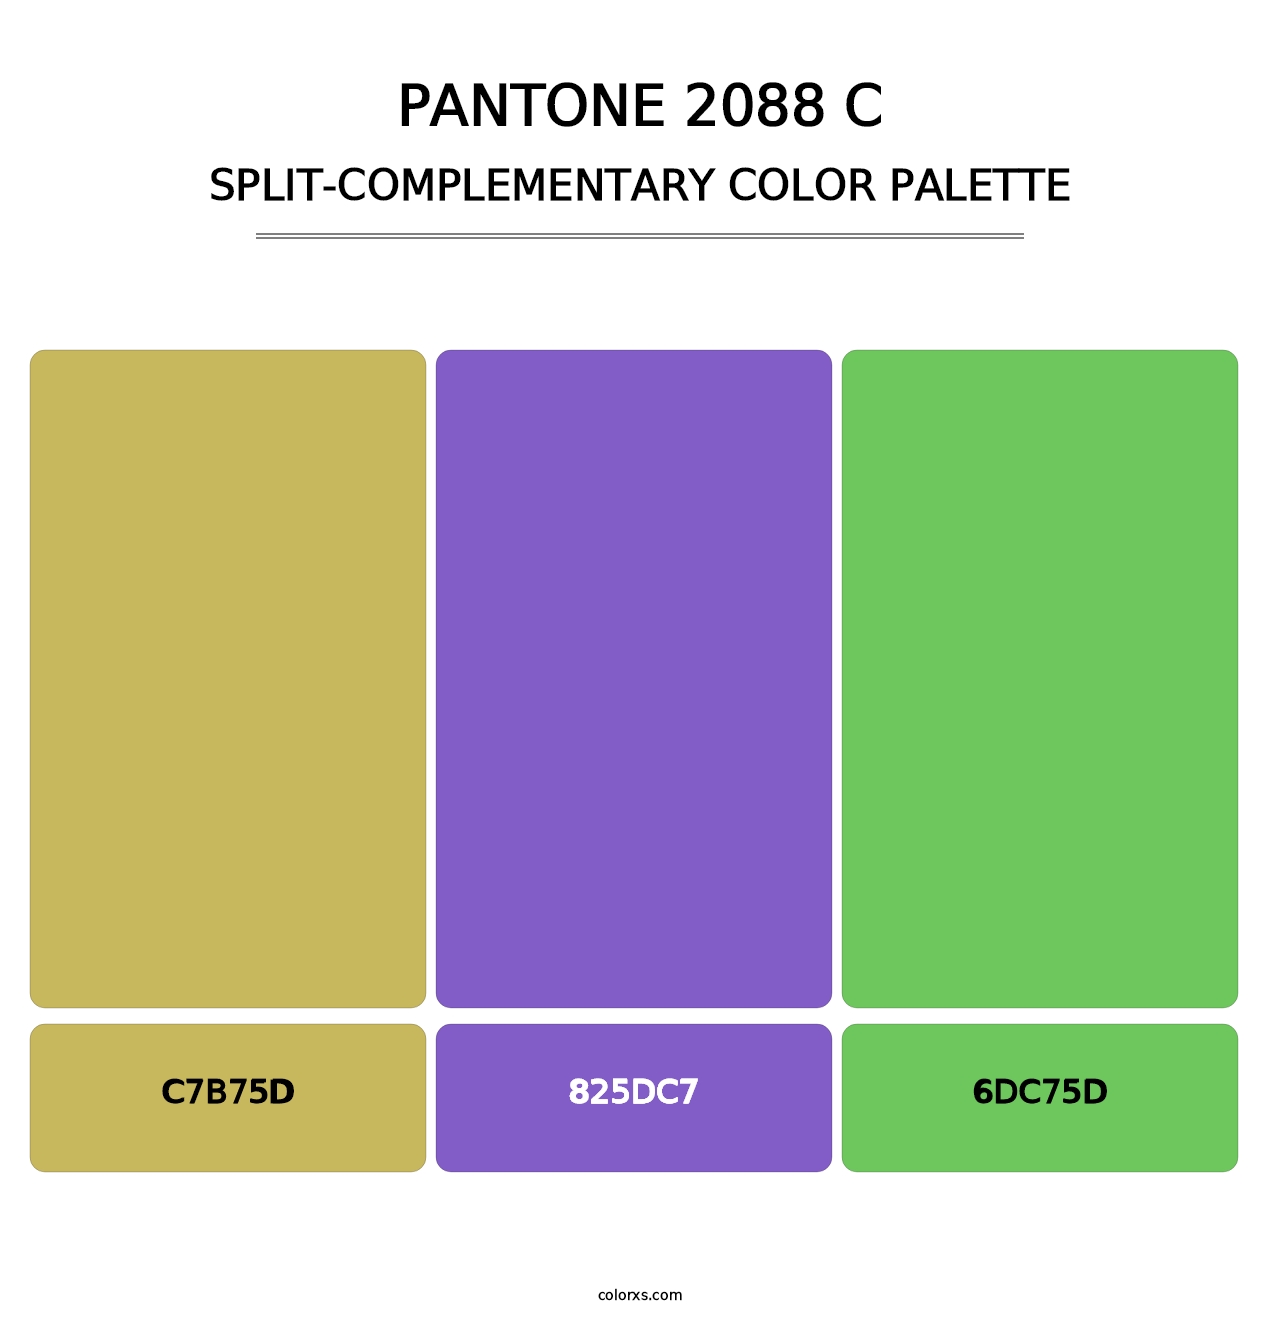 PANTONE 2088 C - Split-Complementary Color Palette